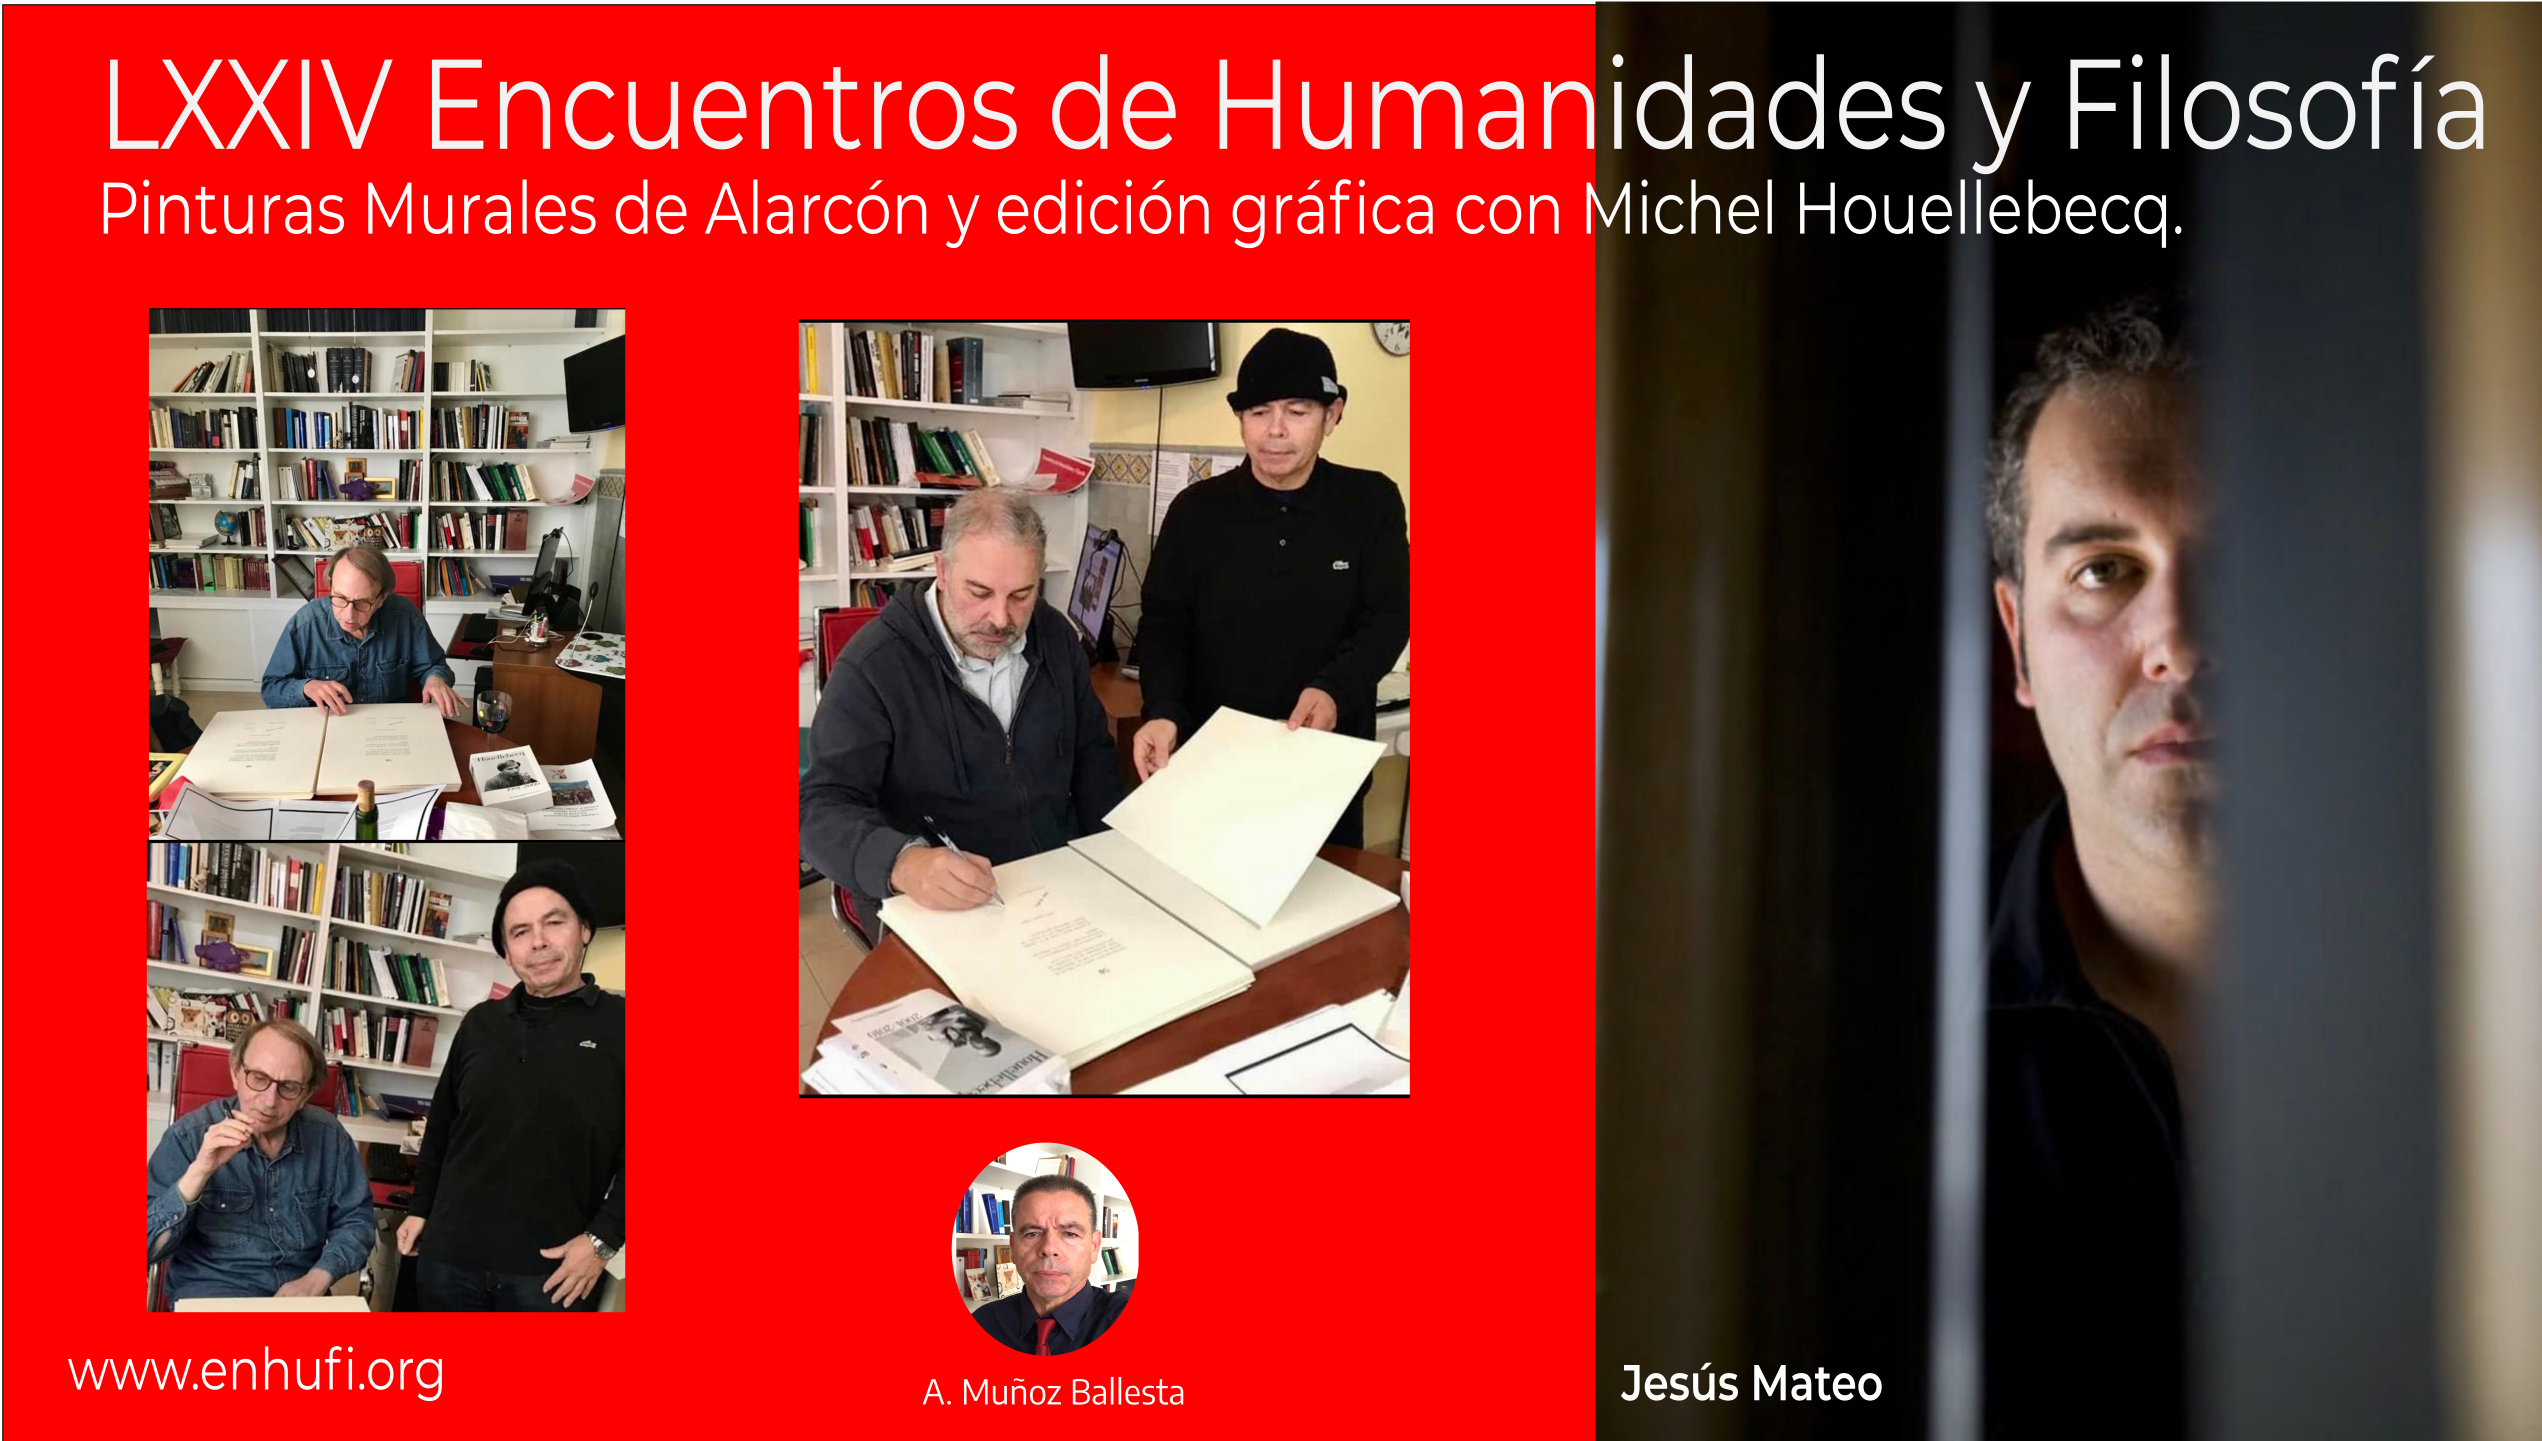 LXXIV Encuentros Humanidades y Filosofía, Jesús Mateo, Pinturas Murales de Alarcón y edición gráfica con Michel Houellebecq.